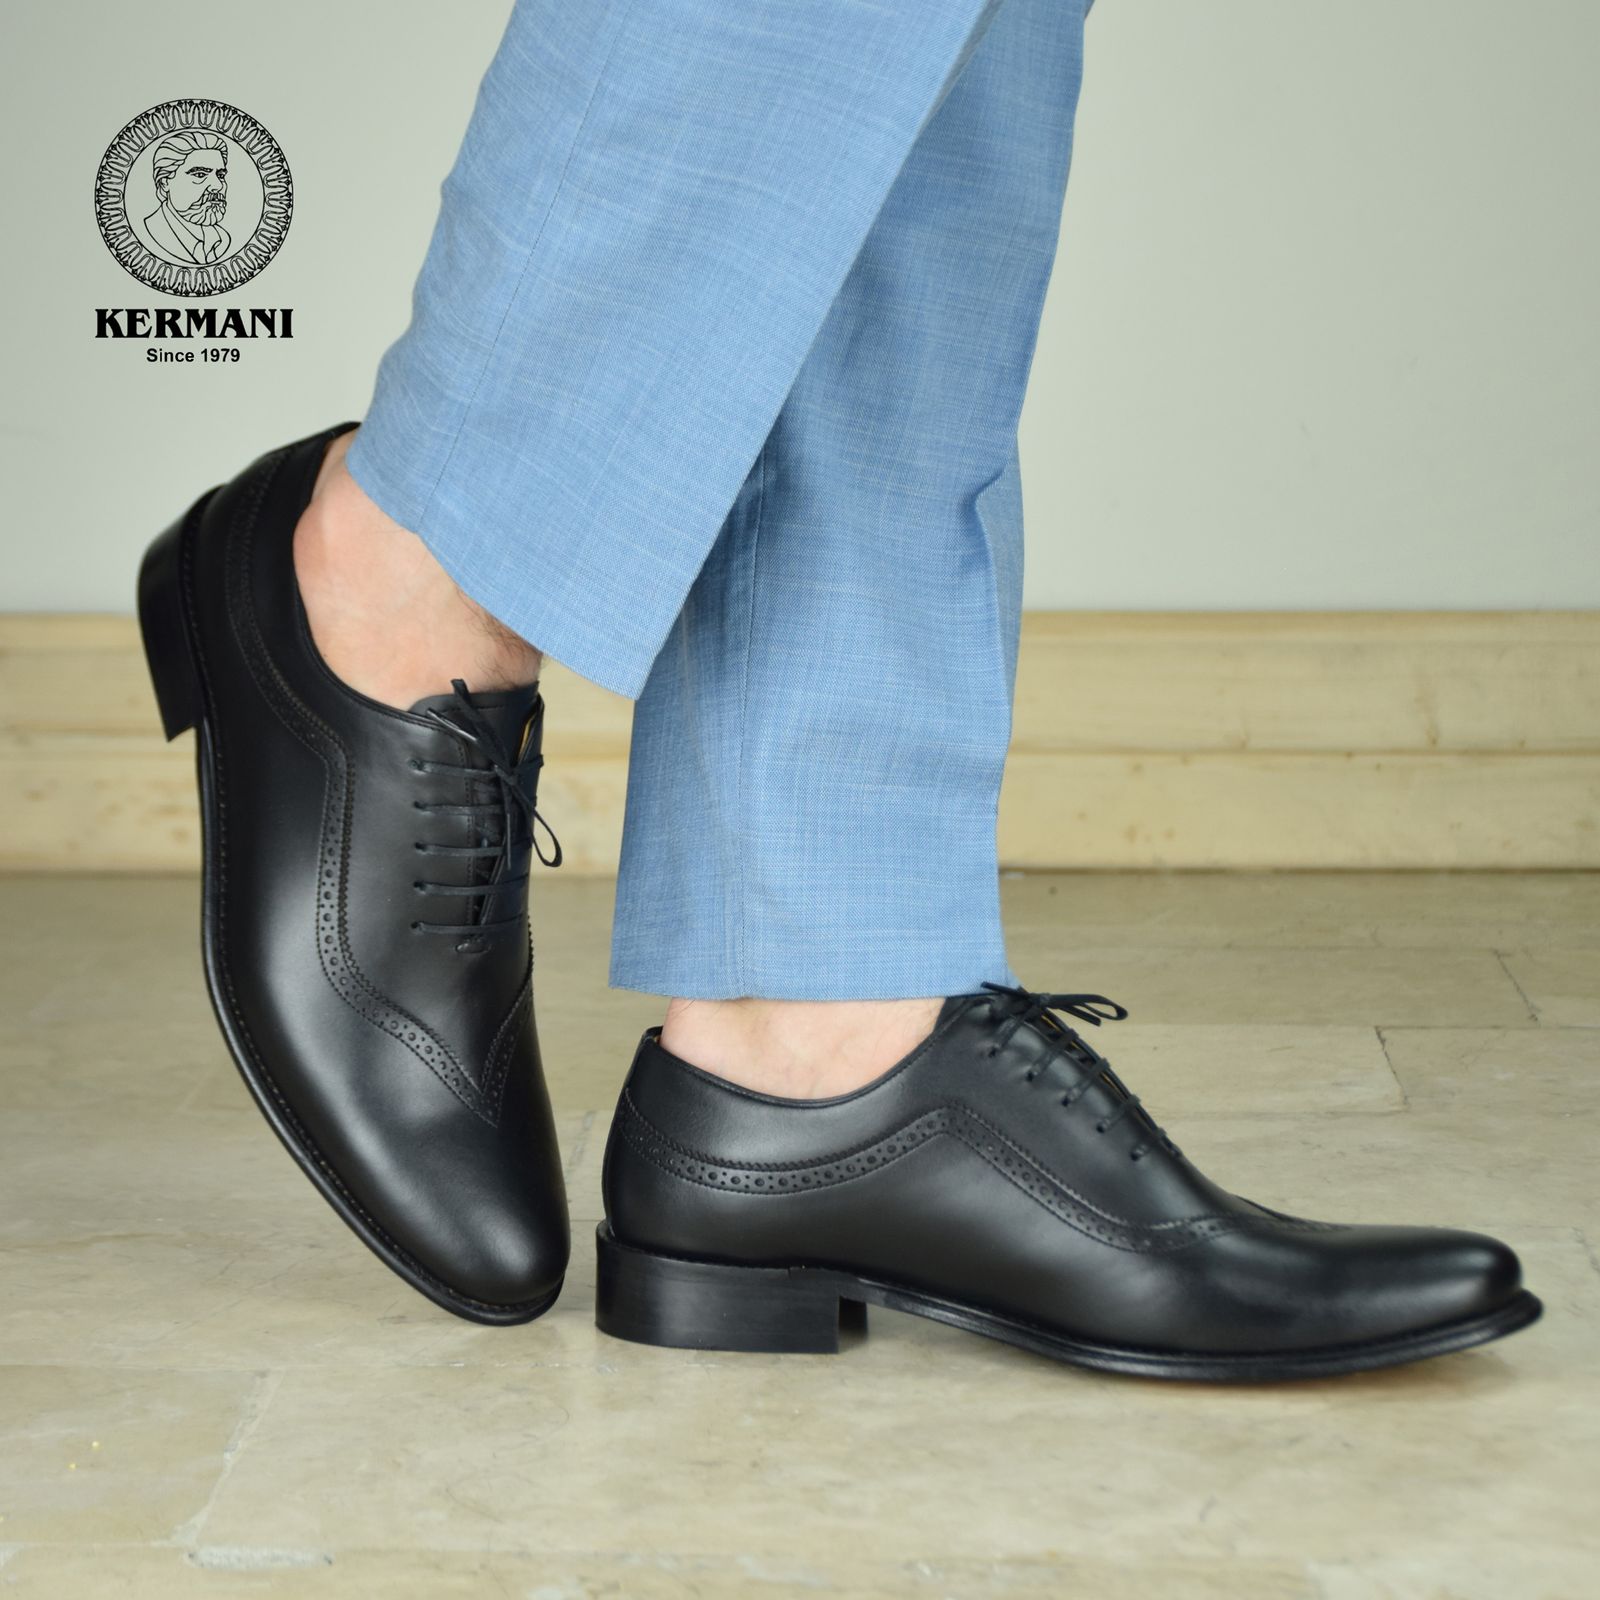 کفش مردانه کرمانی مدل تمام چرم دستدوز طبیعی کد 1072 رنگ مشکی -  - 2